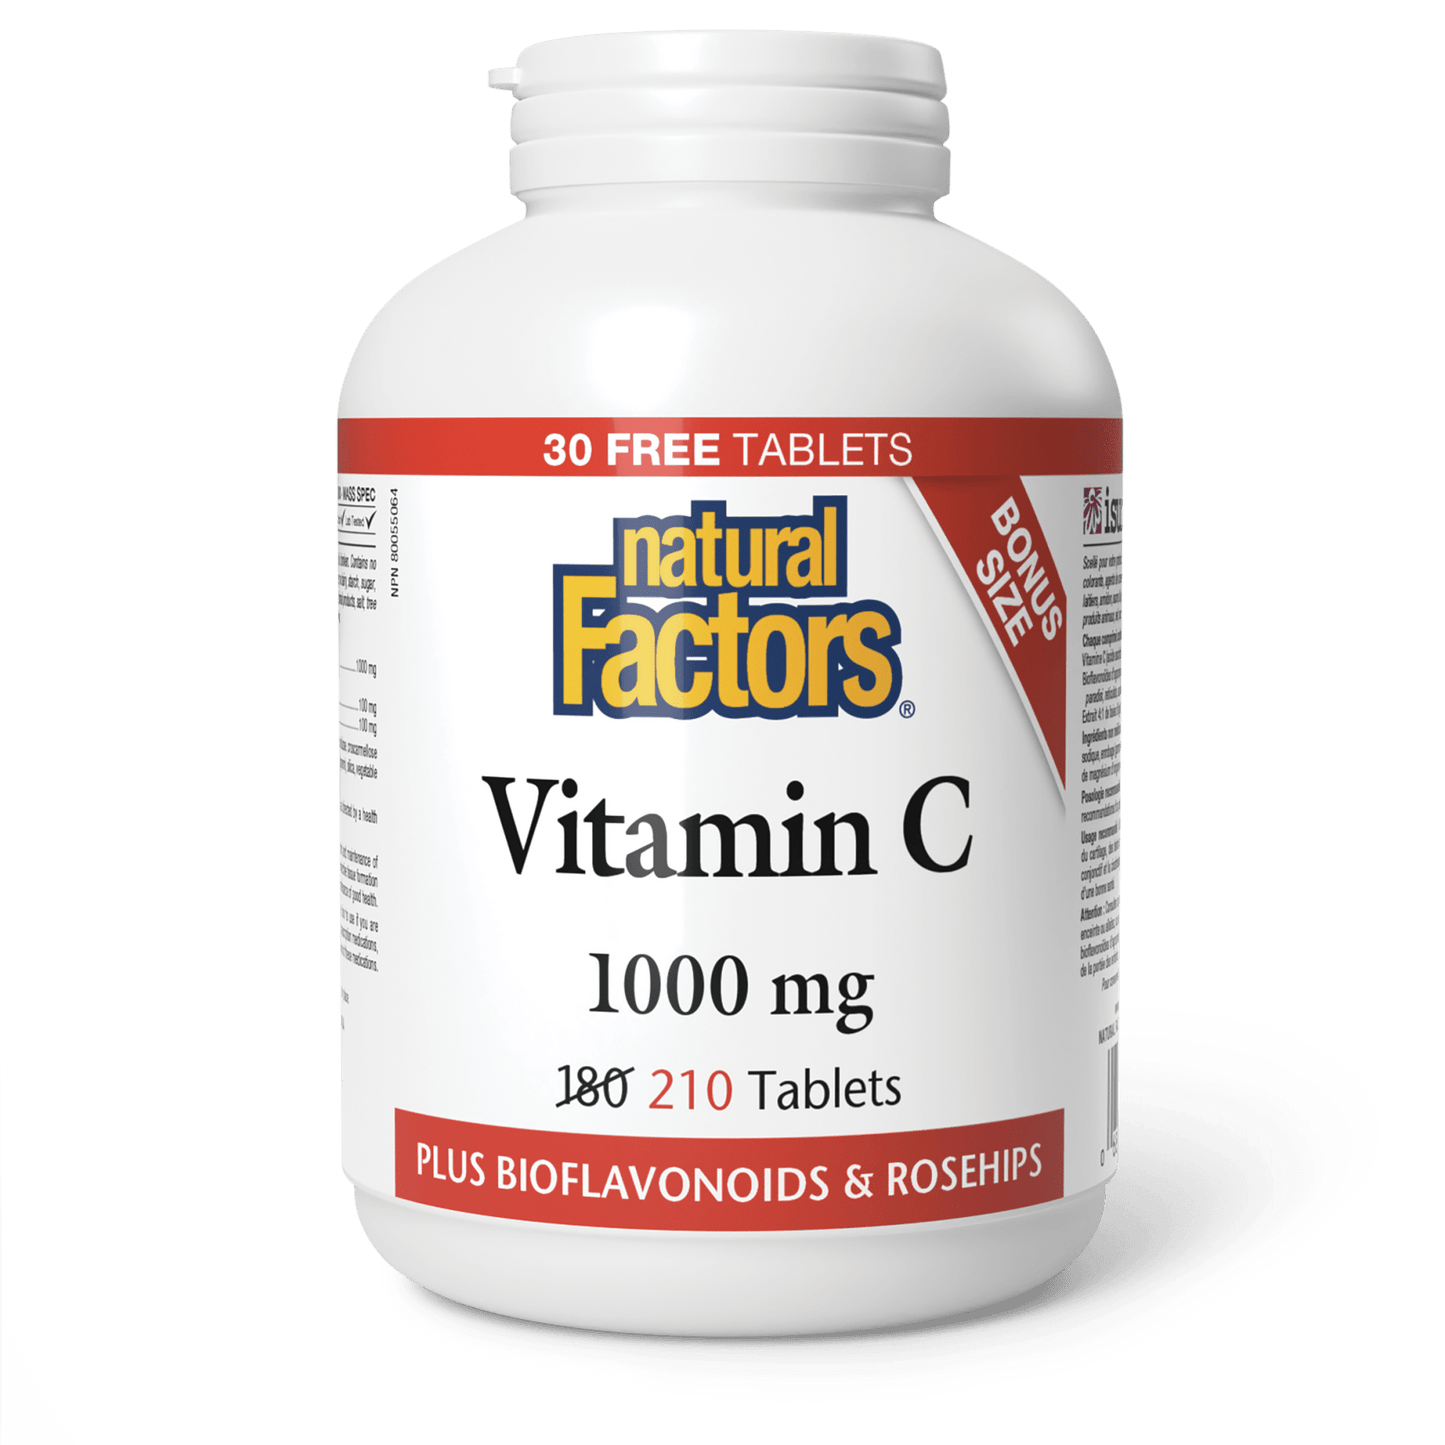 Vitamin C 1000 mg, Natural Factors|v|image|8134